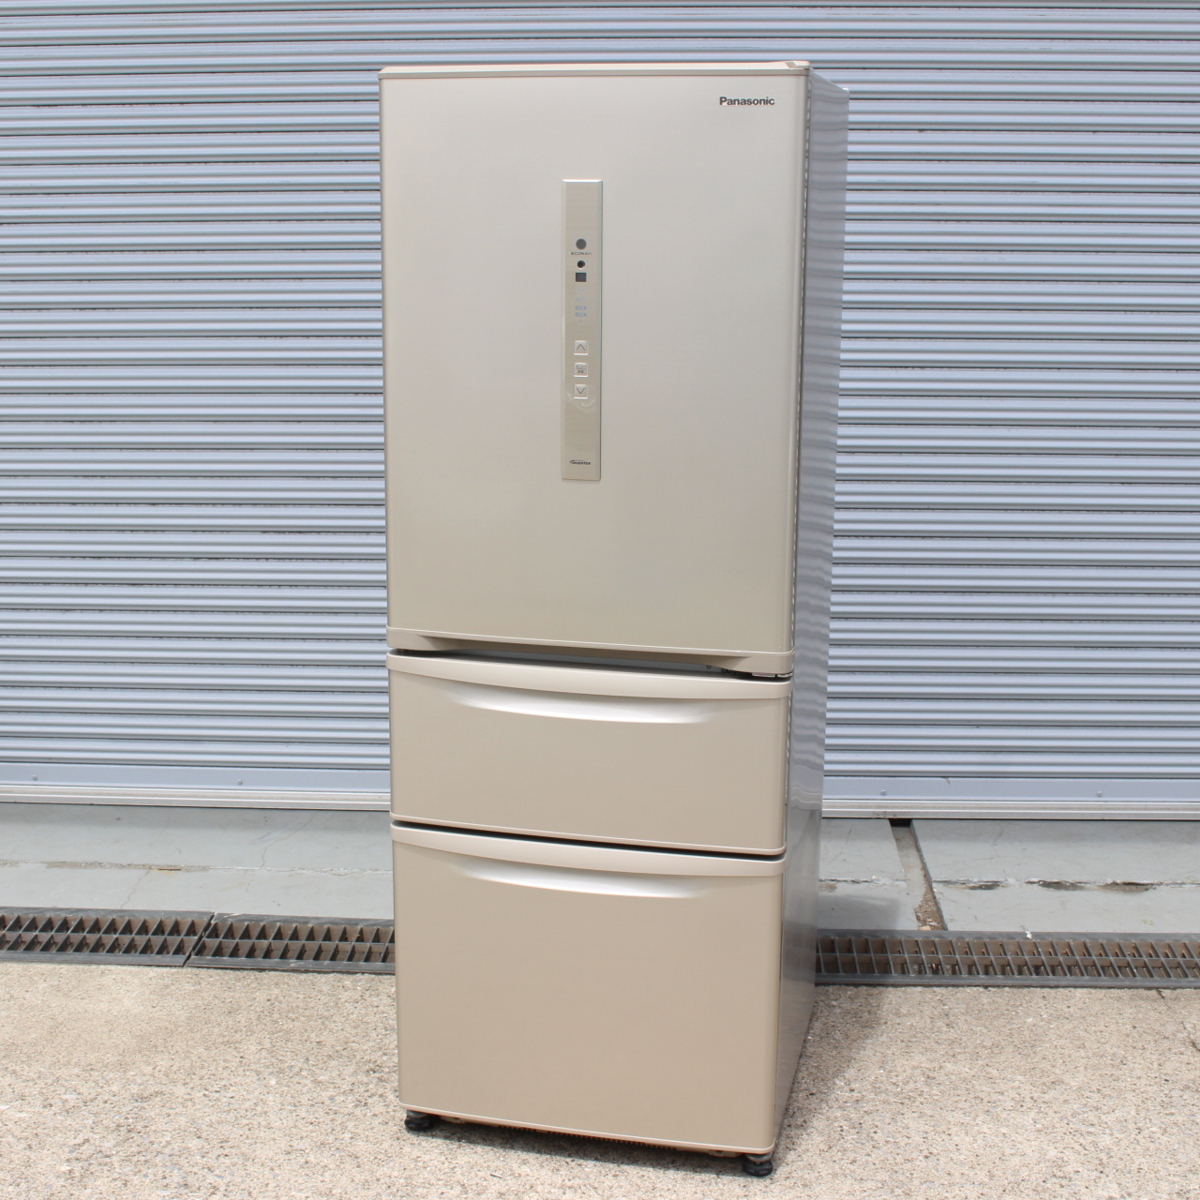 パナソニック ノンフロン冷凍冷蔵庫 NR-C32FM 17年製 315L 3ドア